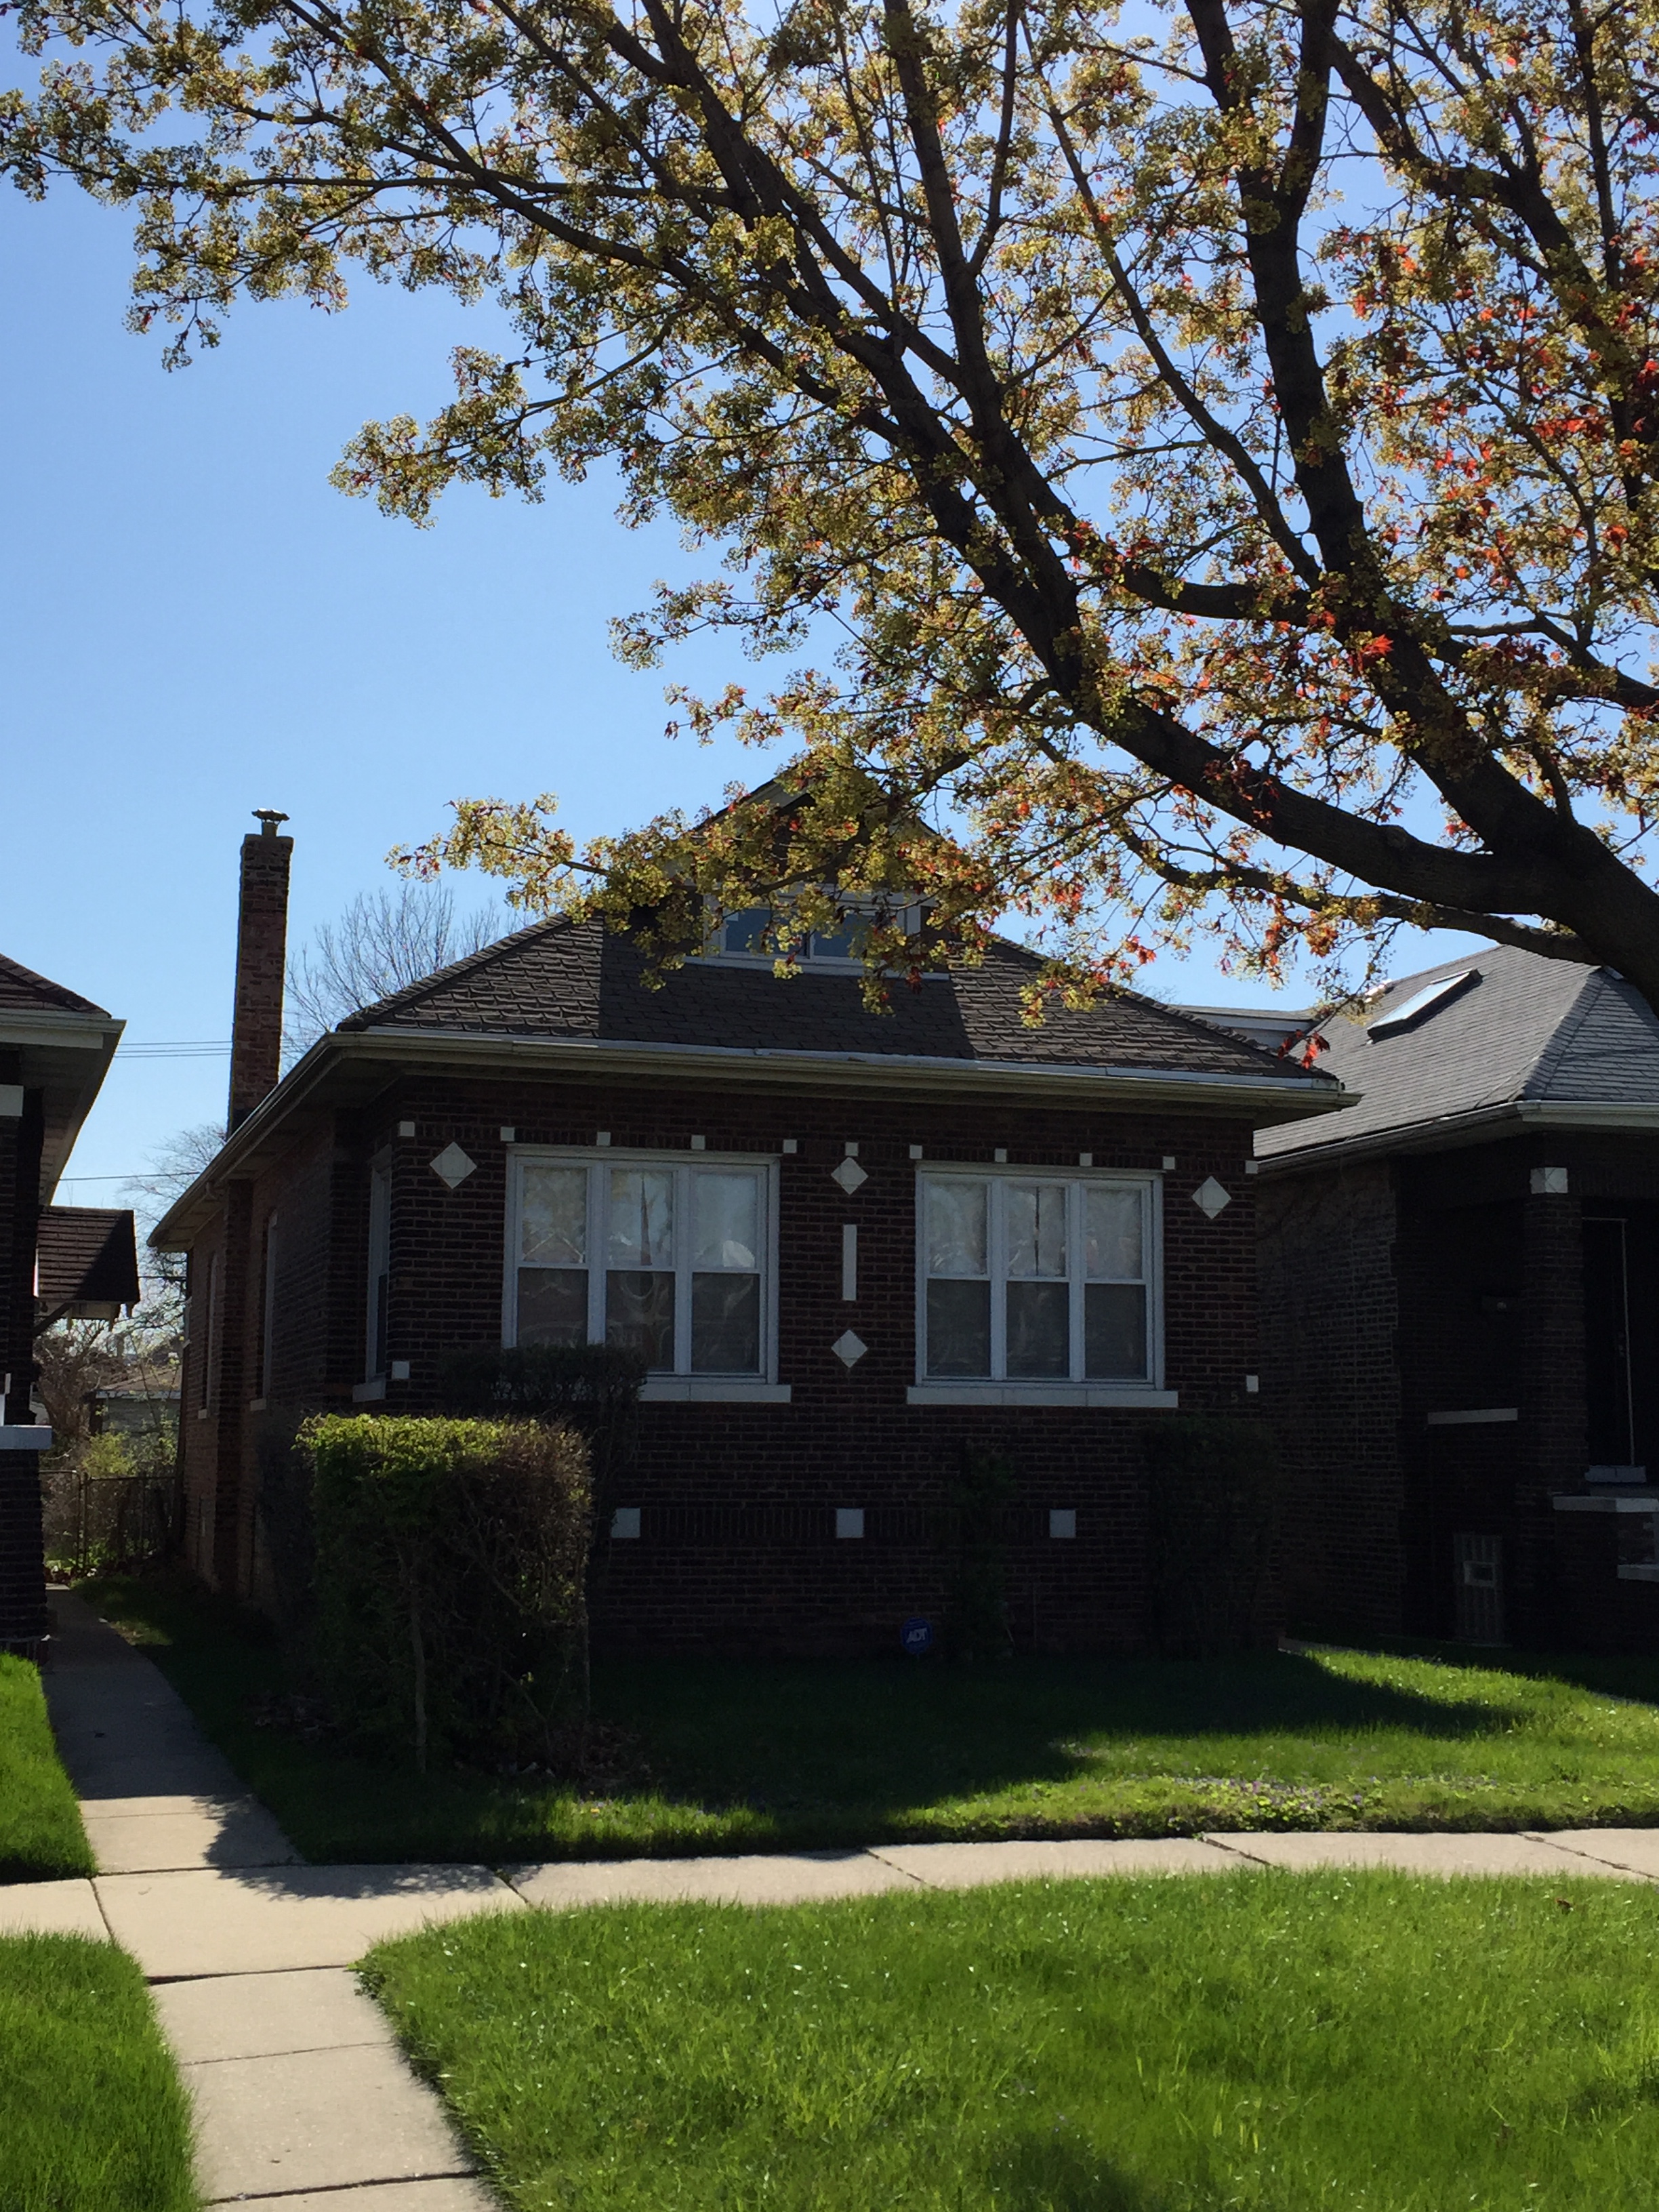 S. Michigan — revitalizing chicago's neighborhoods